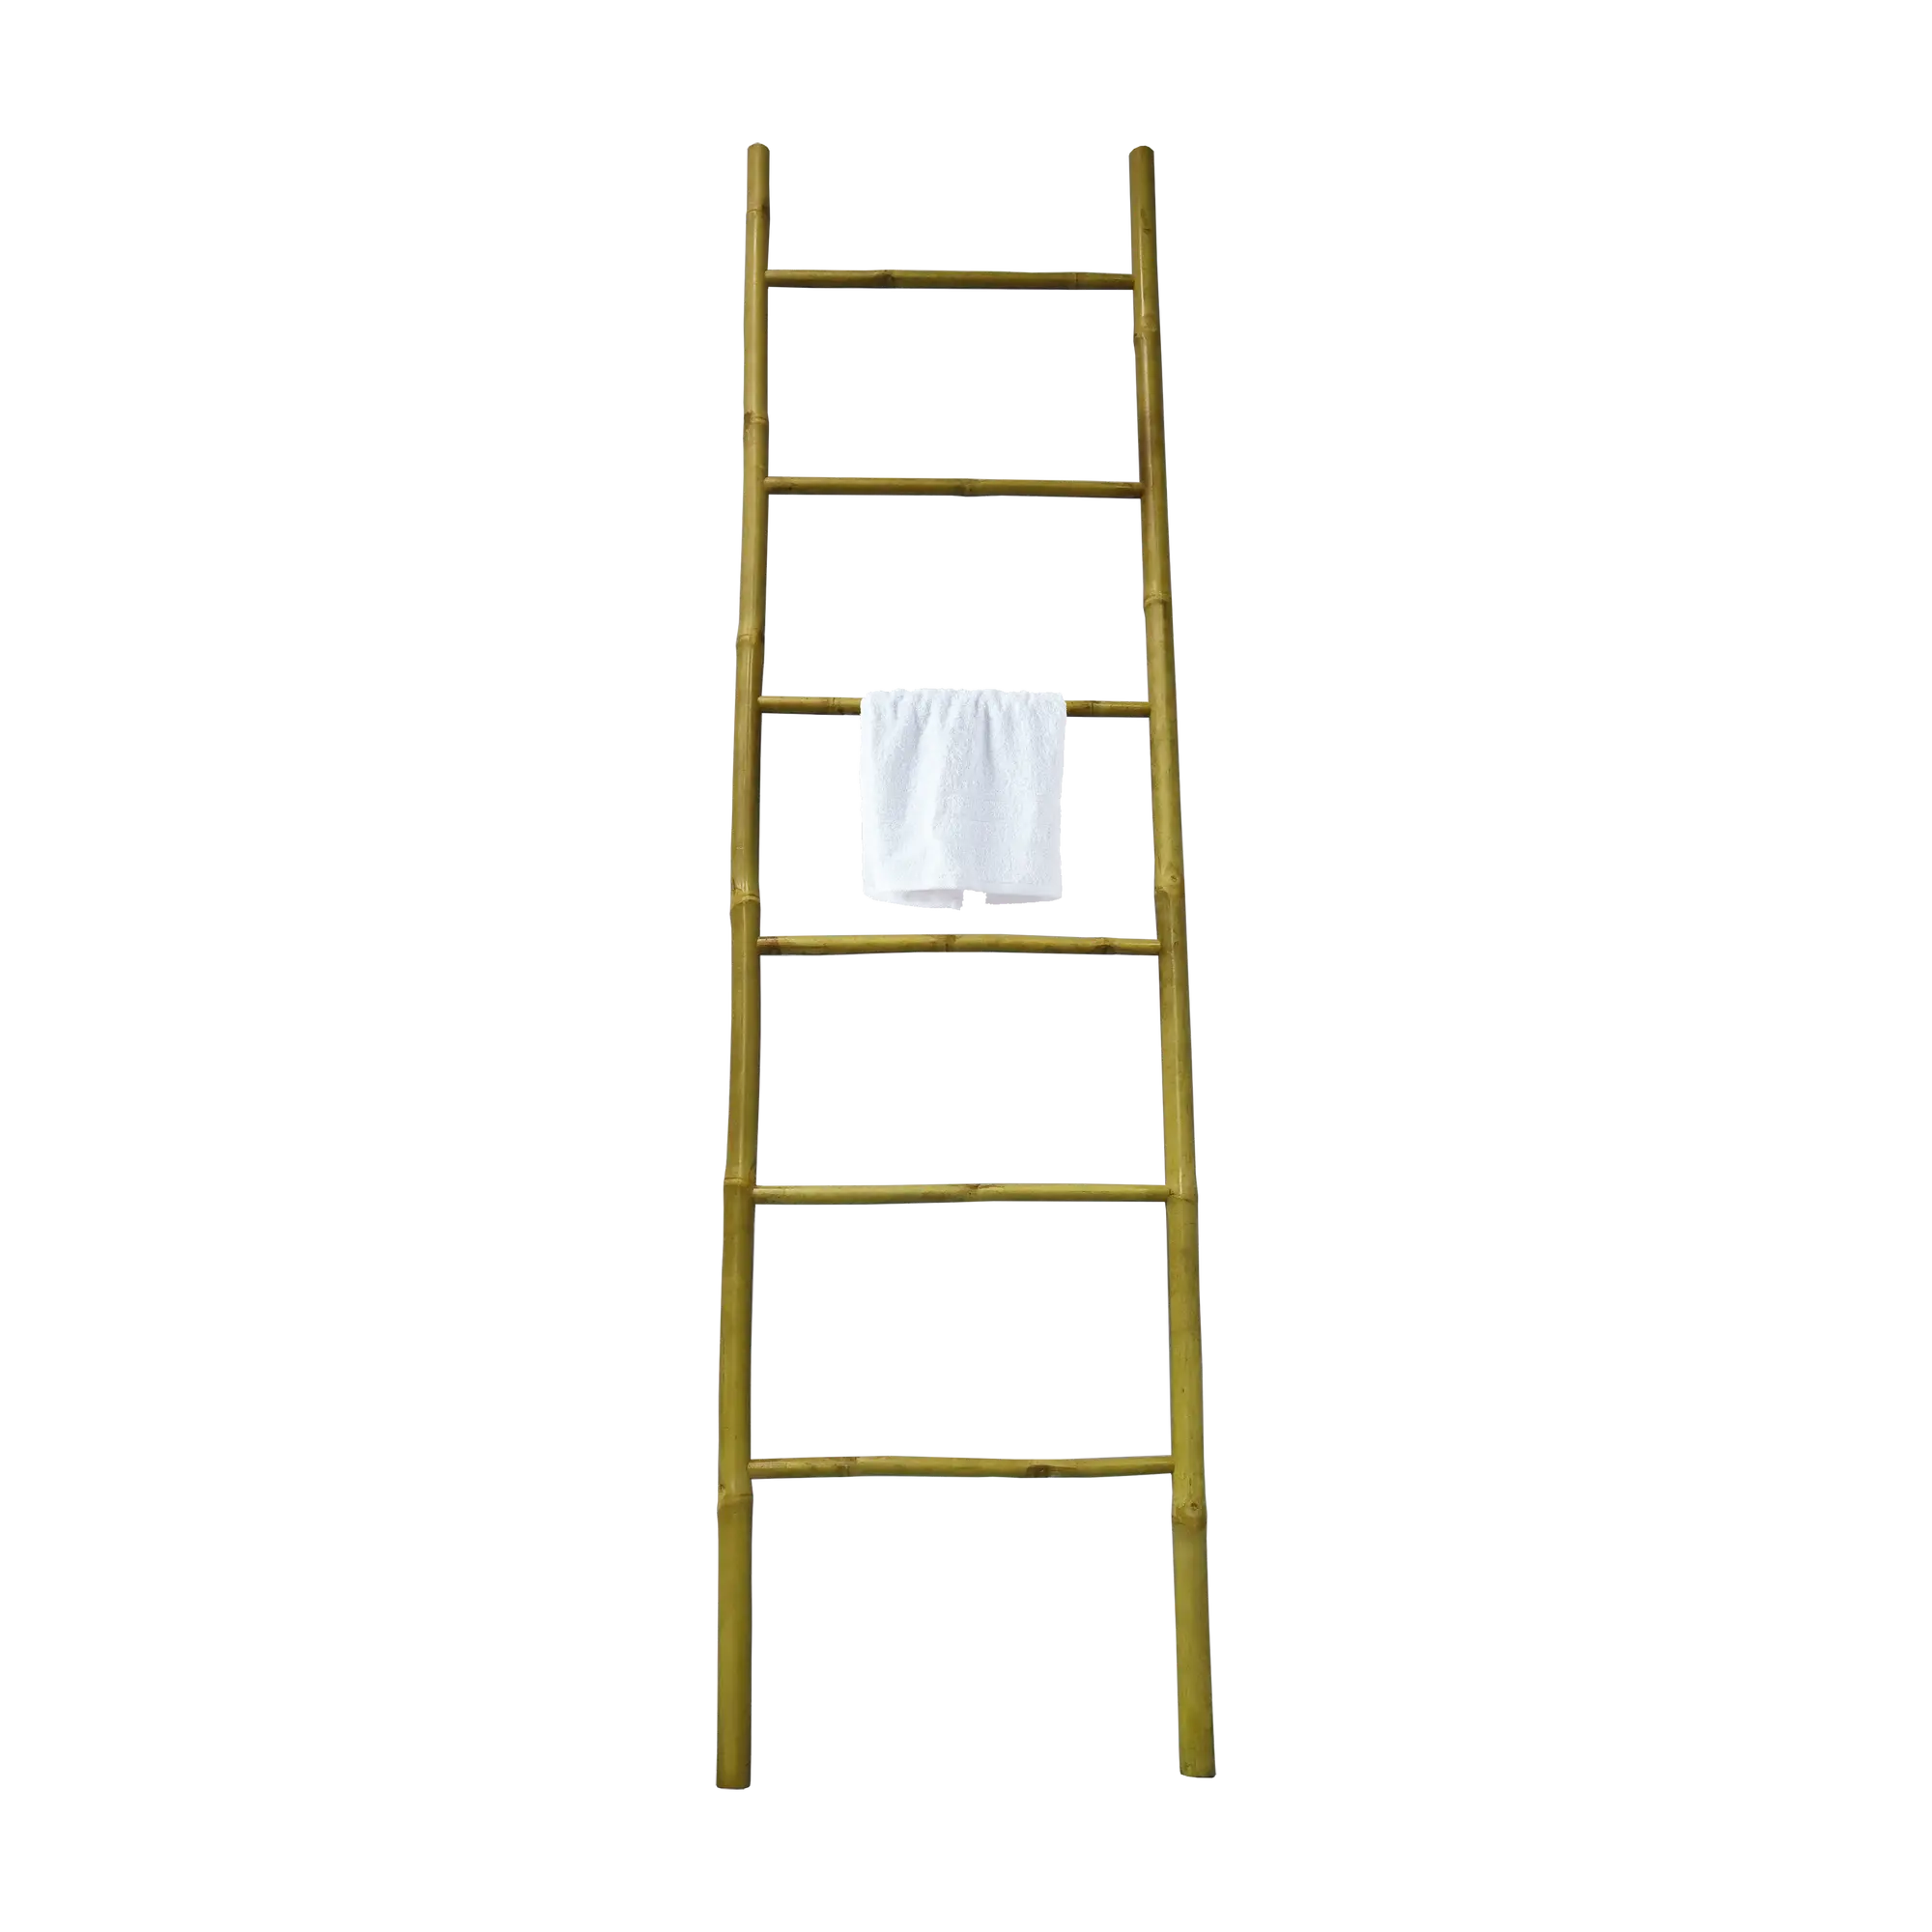 Toallero en escalera bamboo beige barnizado 3.5x190 cm